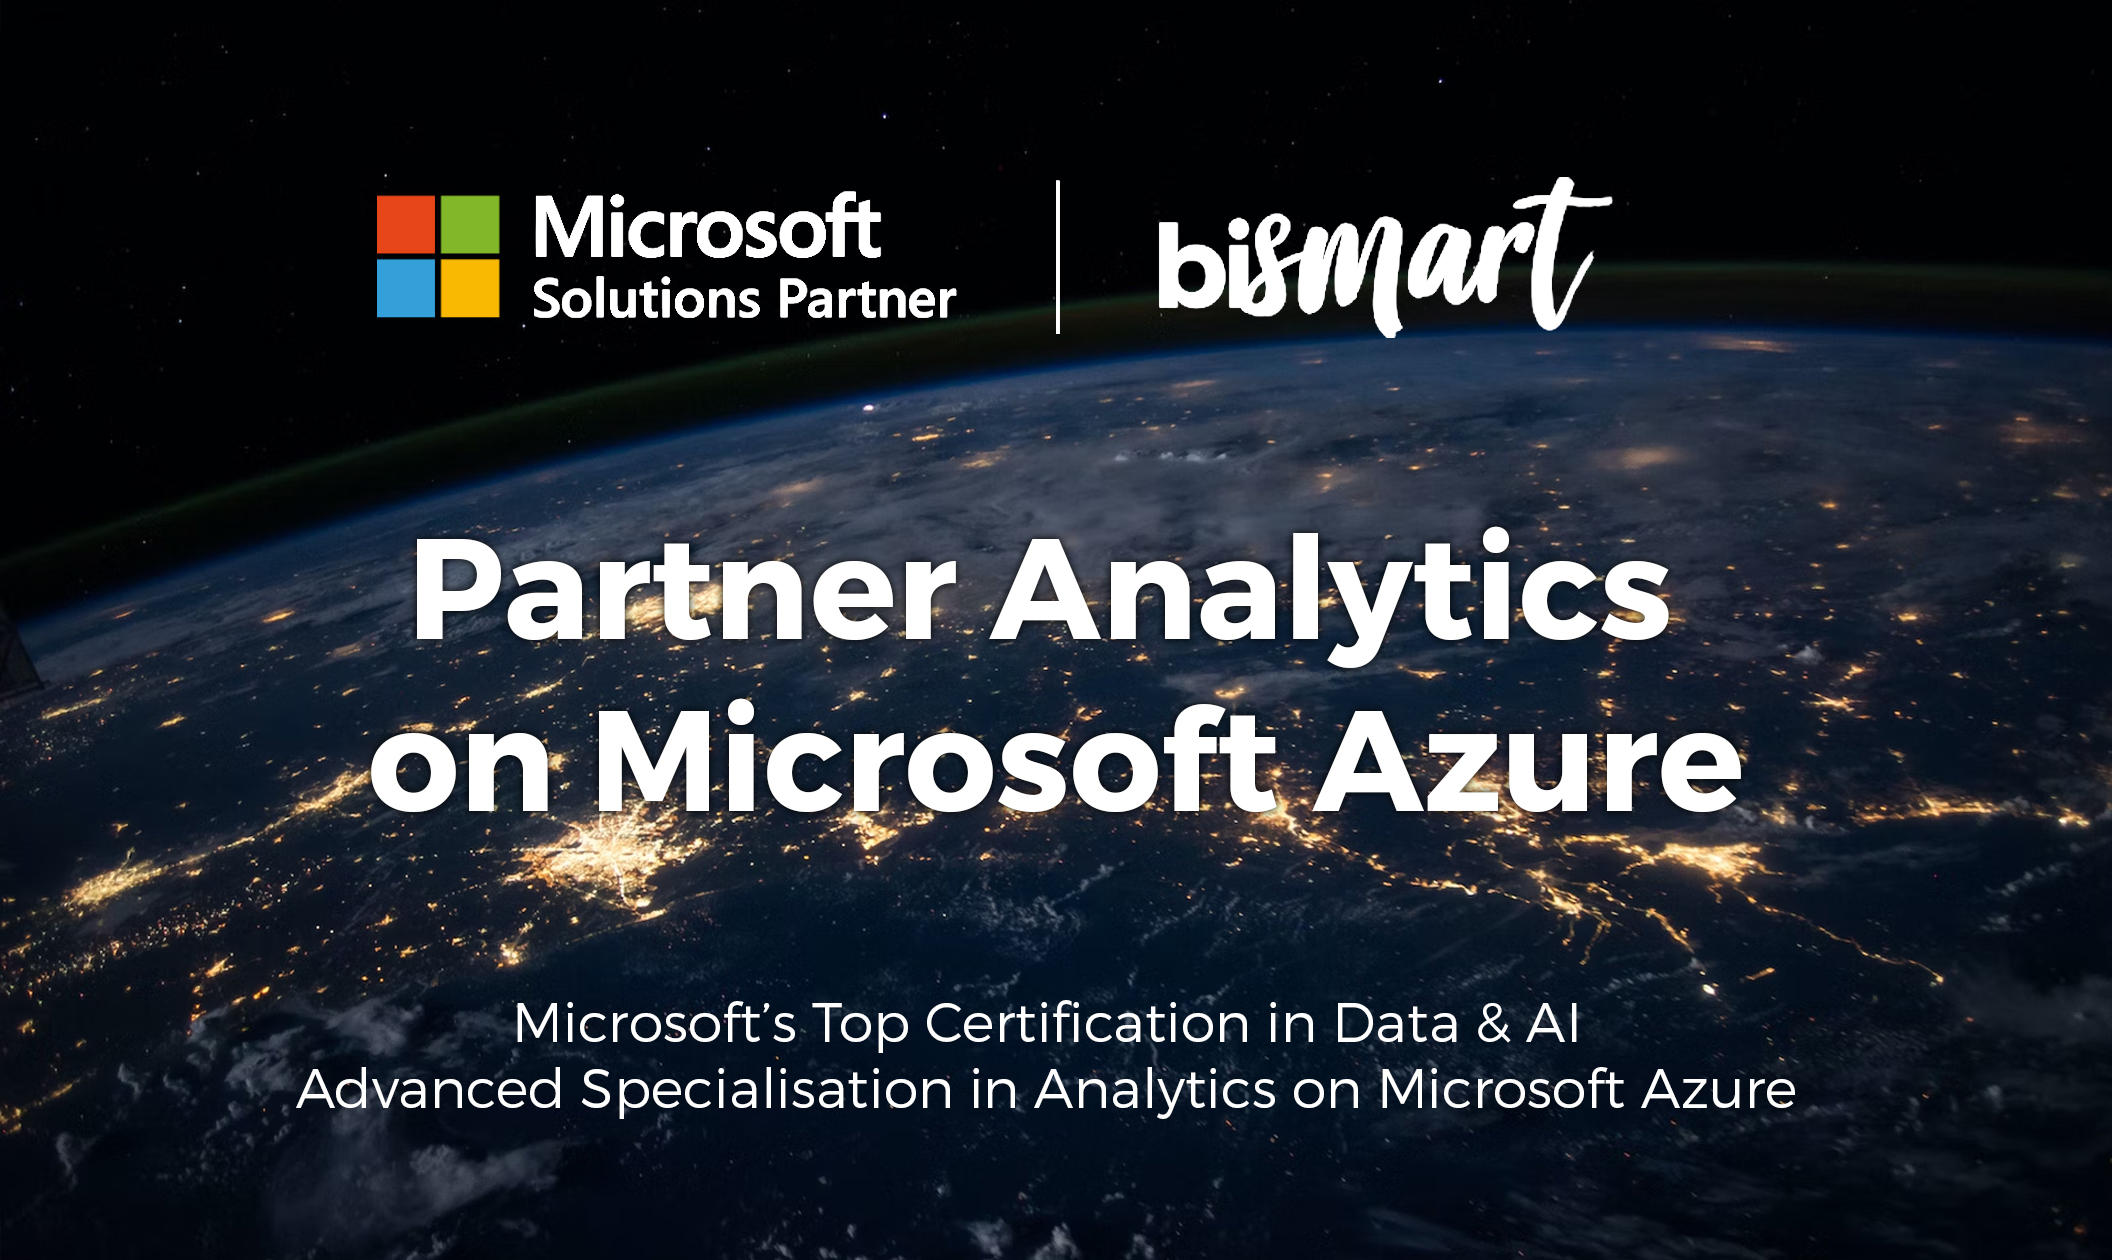 Bismart achieves Specialization 'Analytics on Microsoft Azure'